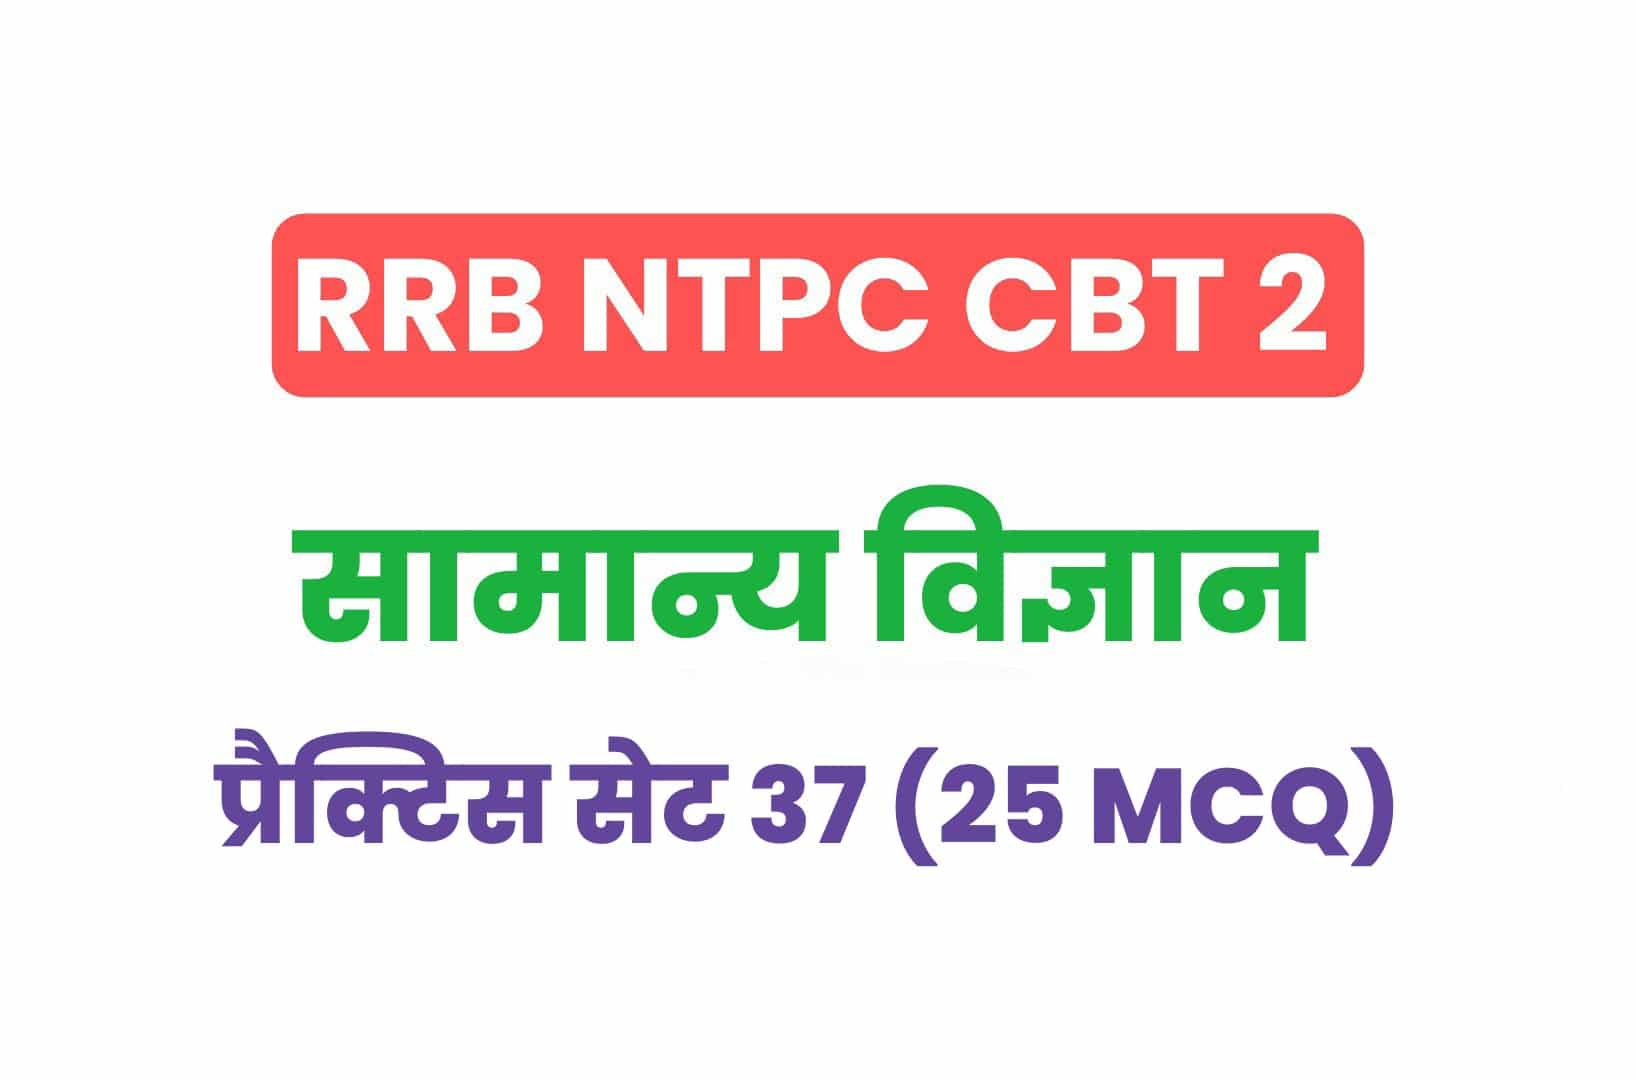 RRB NTPC CBT 2 Science प्रैक्टिस सेट 37: सामान्य विज्ञान के 25 महत्वपूर्ण MCQ, अवश्य पढ़ें